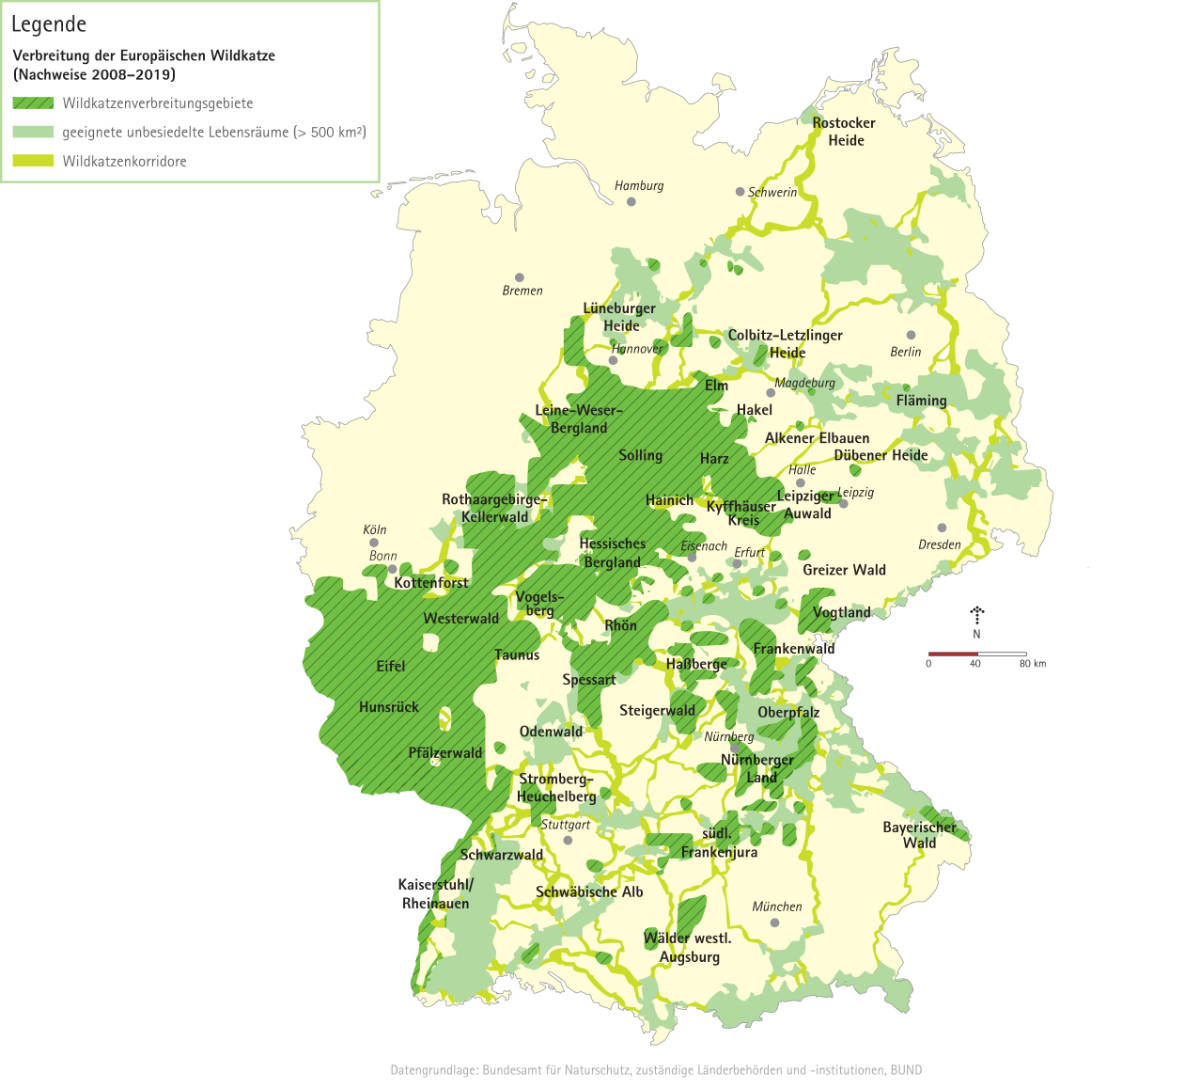 Karte der Verbreitungsgebiete der Europäischen Wildkatze in Deutschland, potentielle Lebensräume und Korridore (Grafik: Die Projektoren / BUND)